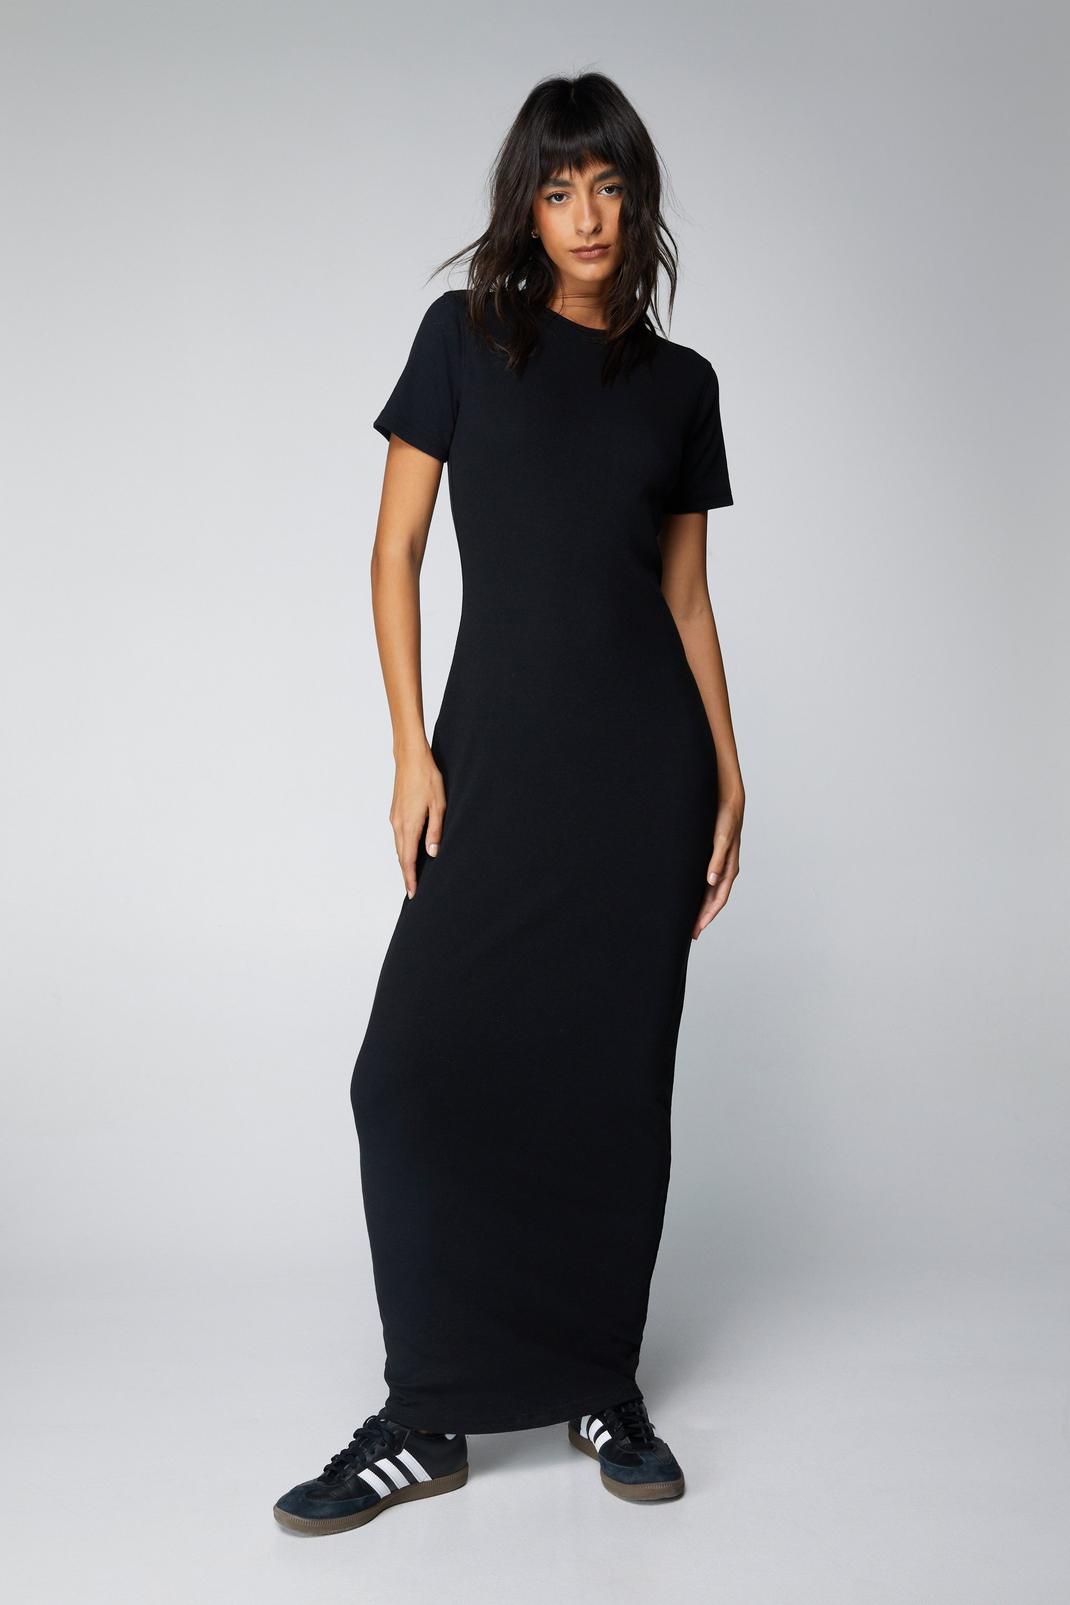 Buy Rigo Black Cotton T Shirt Dress - Dresses for Women 6911332